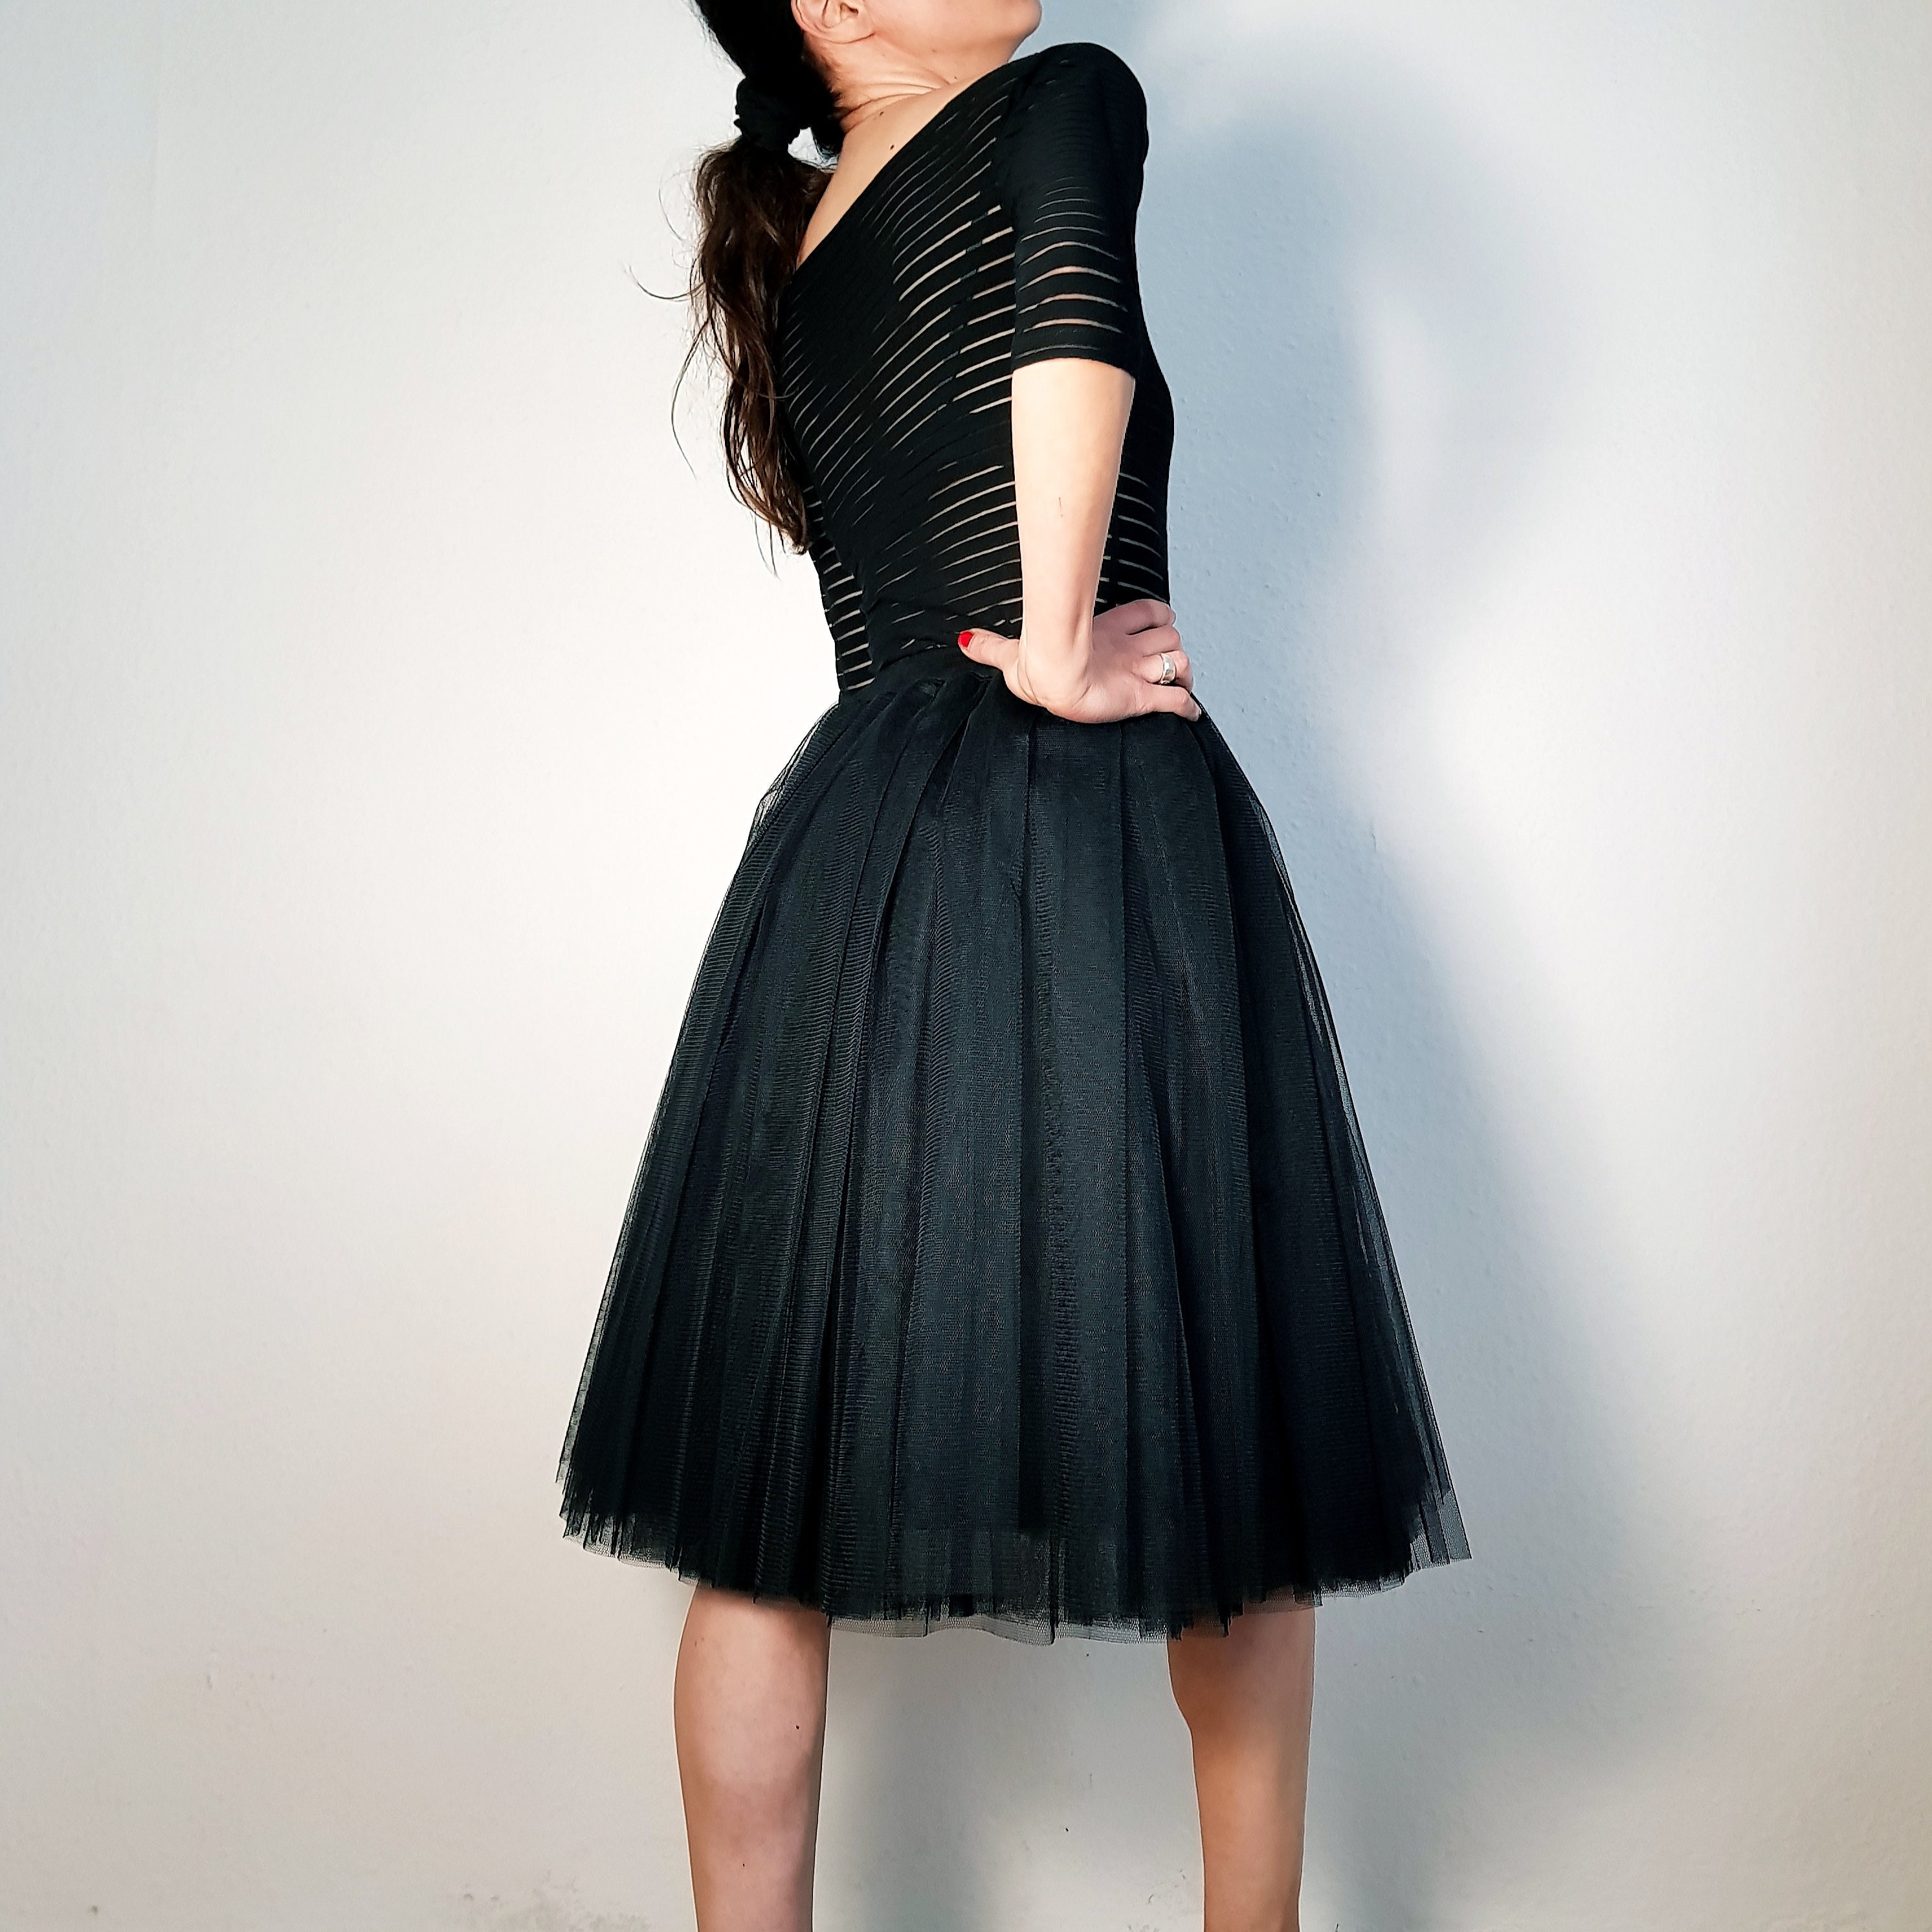 Tulle Skirt / Petticoat Black 60 Cm Skirt Length - Etsy Norway